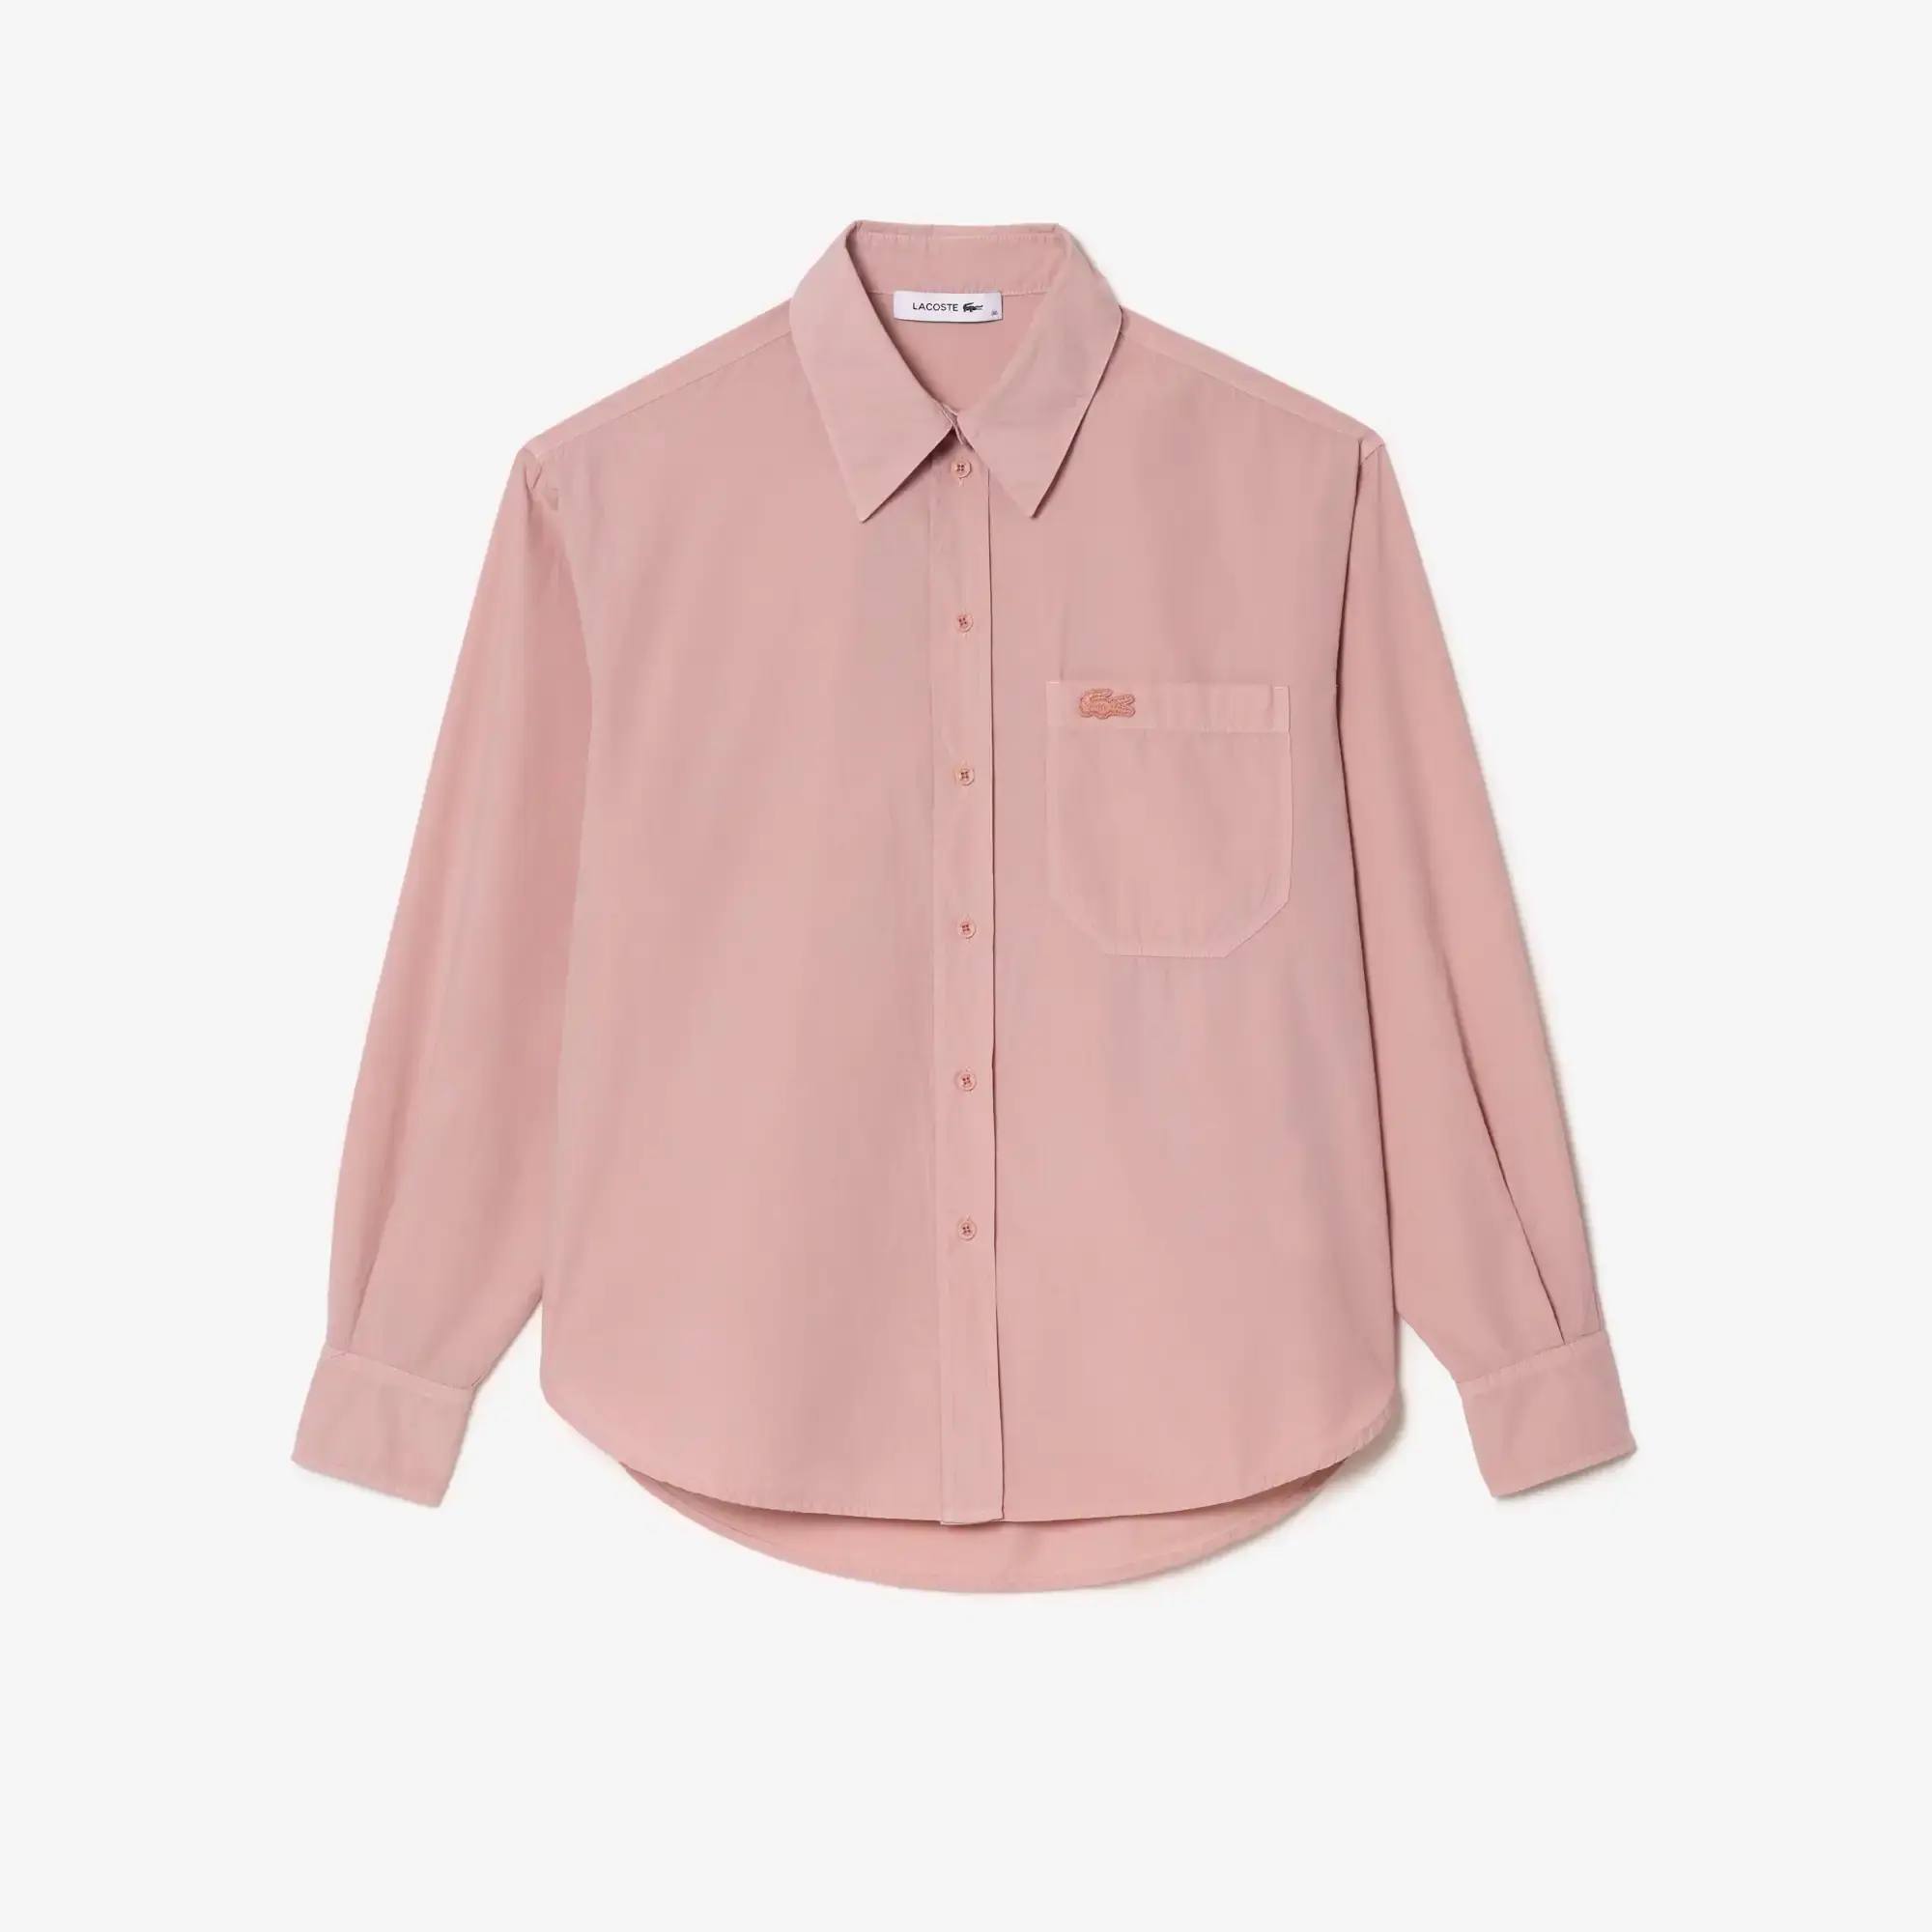 Lacoste Women’s Oversized Cotton Poplin Shirt. 2